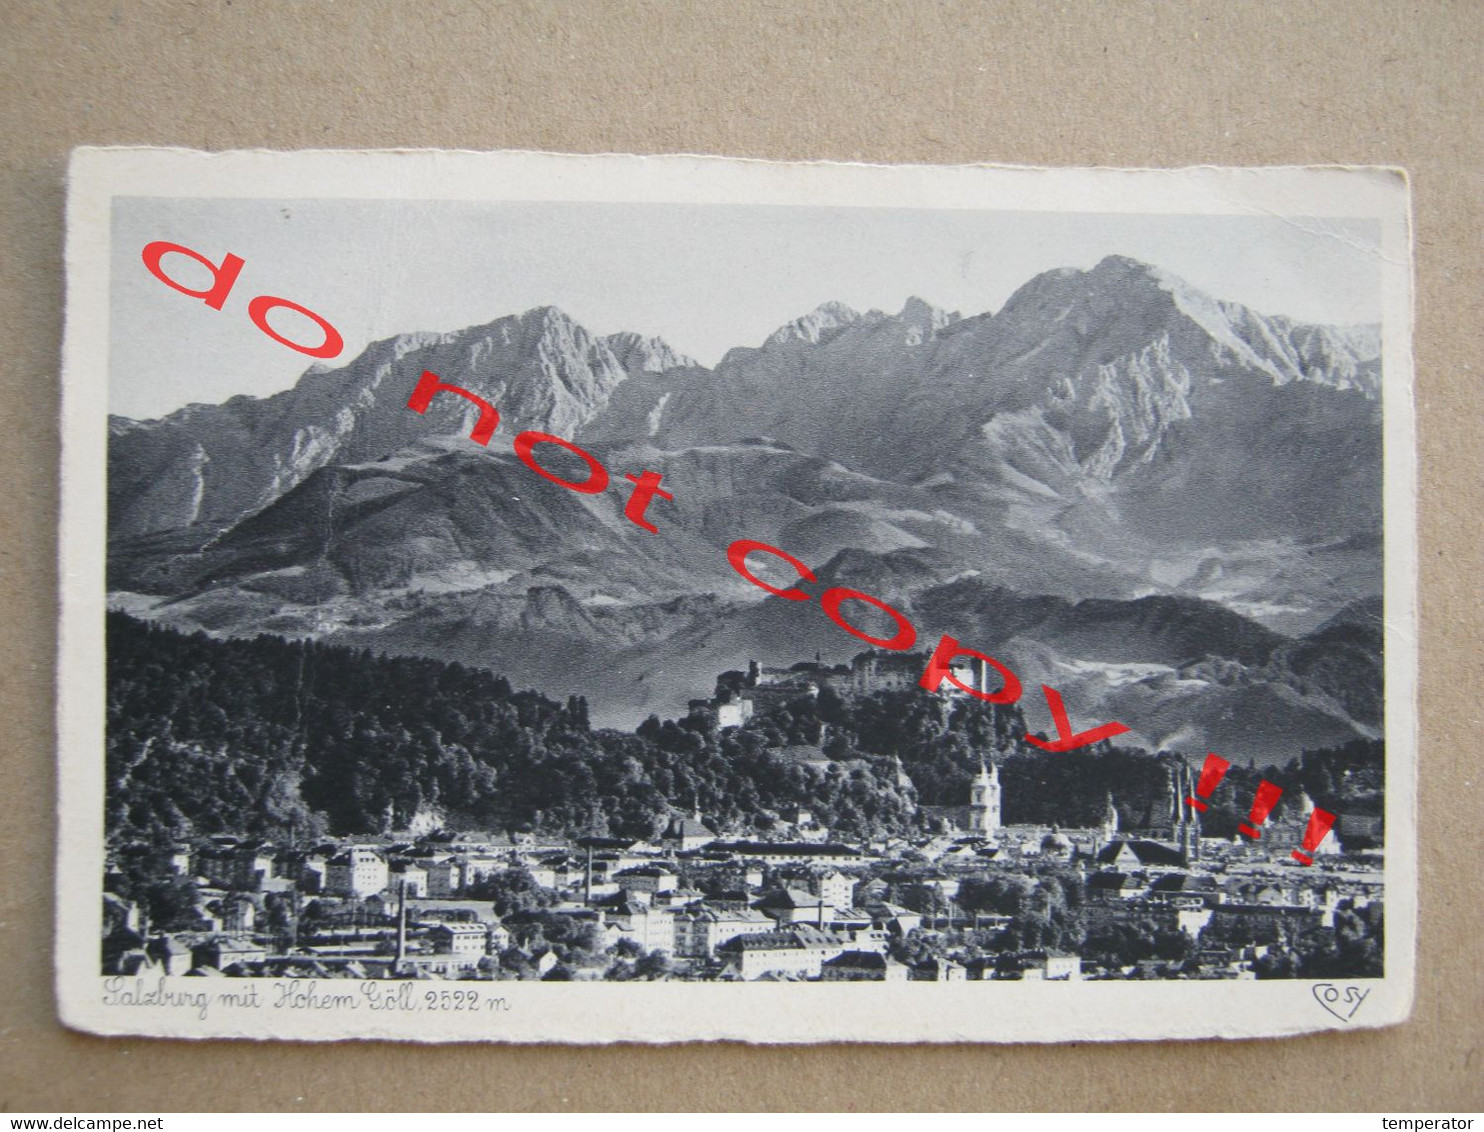 Austria / Salzburg Mit Hohem Goll, 2522 M - Gesehen Vom Wallfahrtsort Maria Plain - Maria Alm